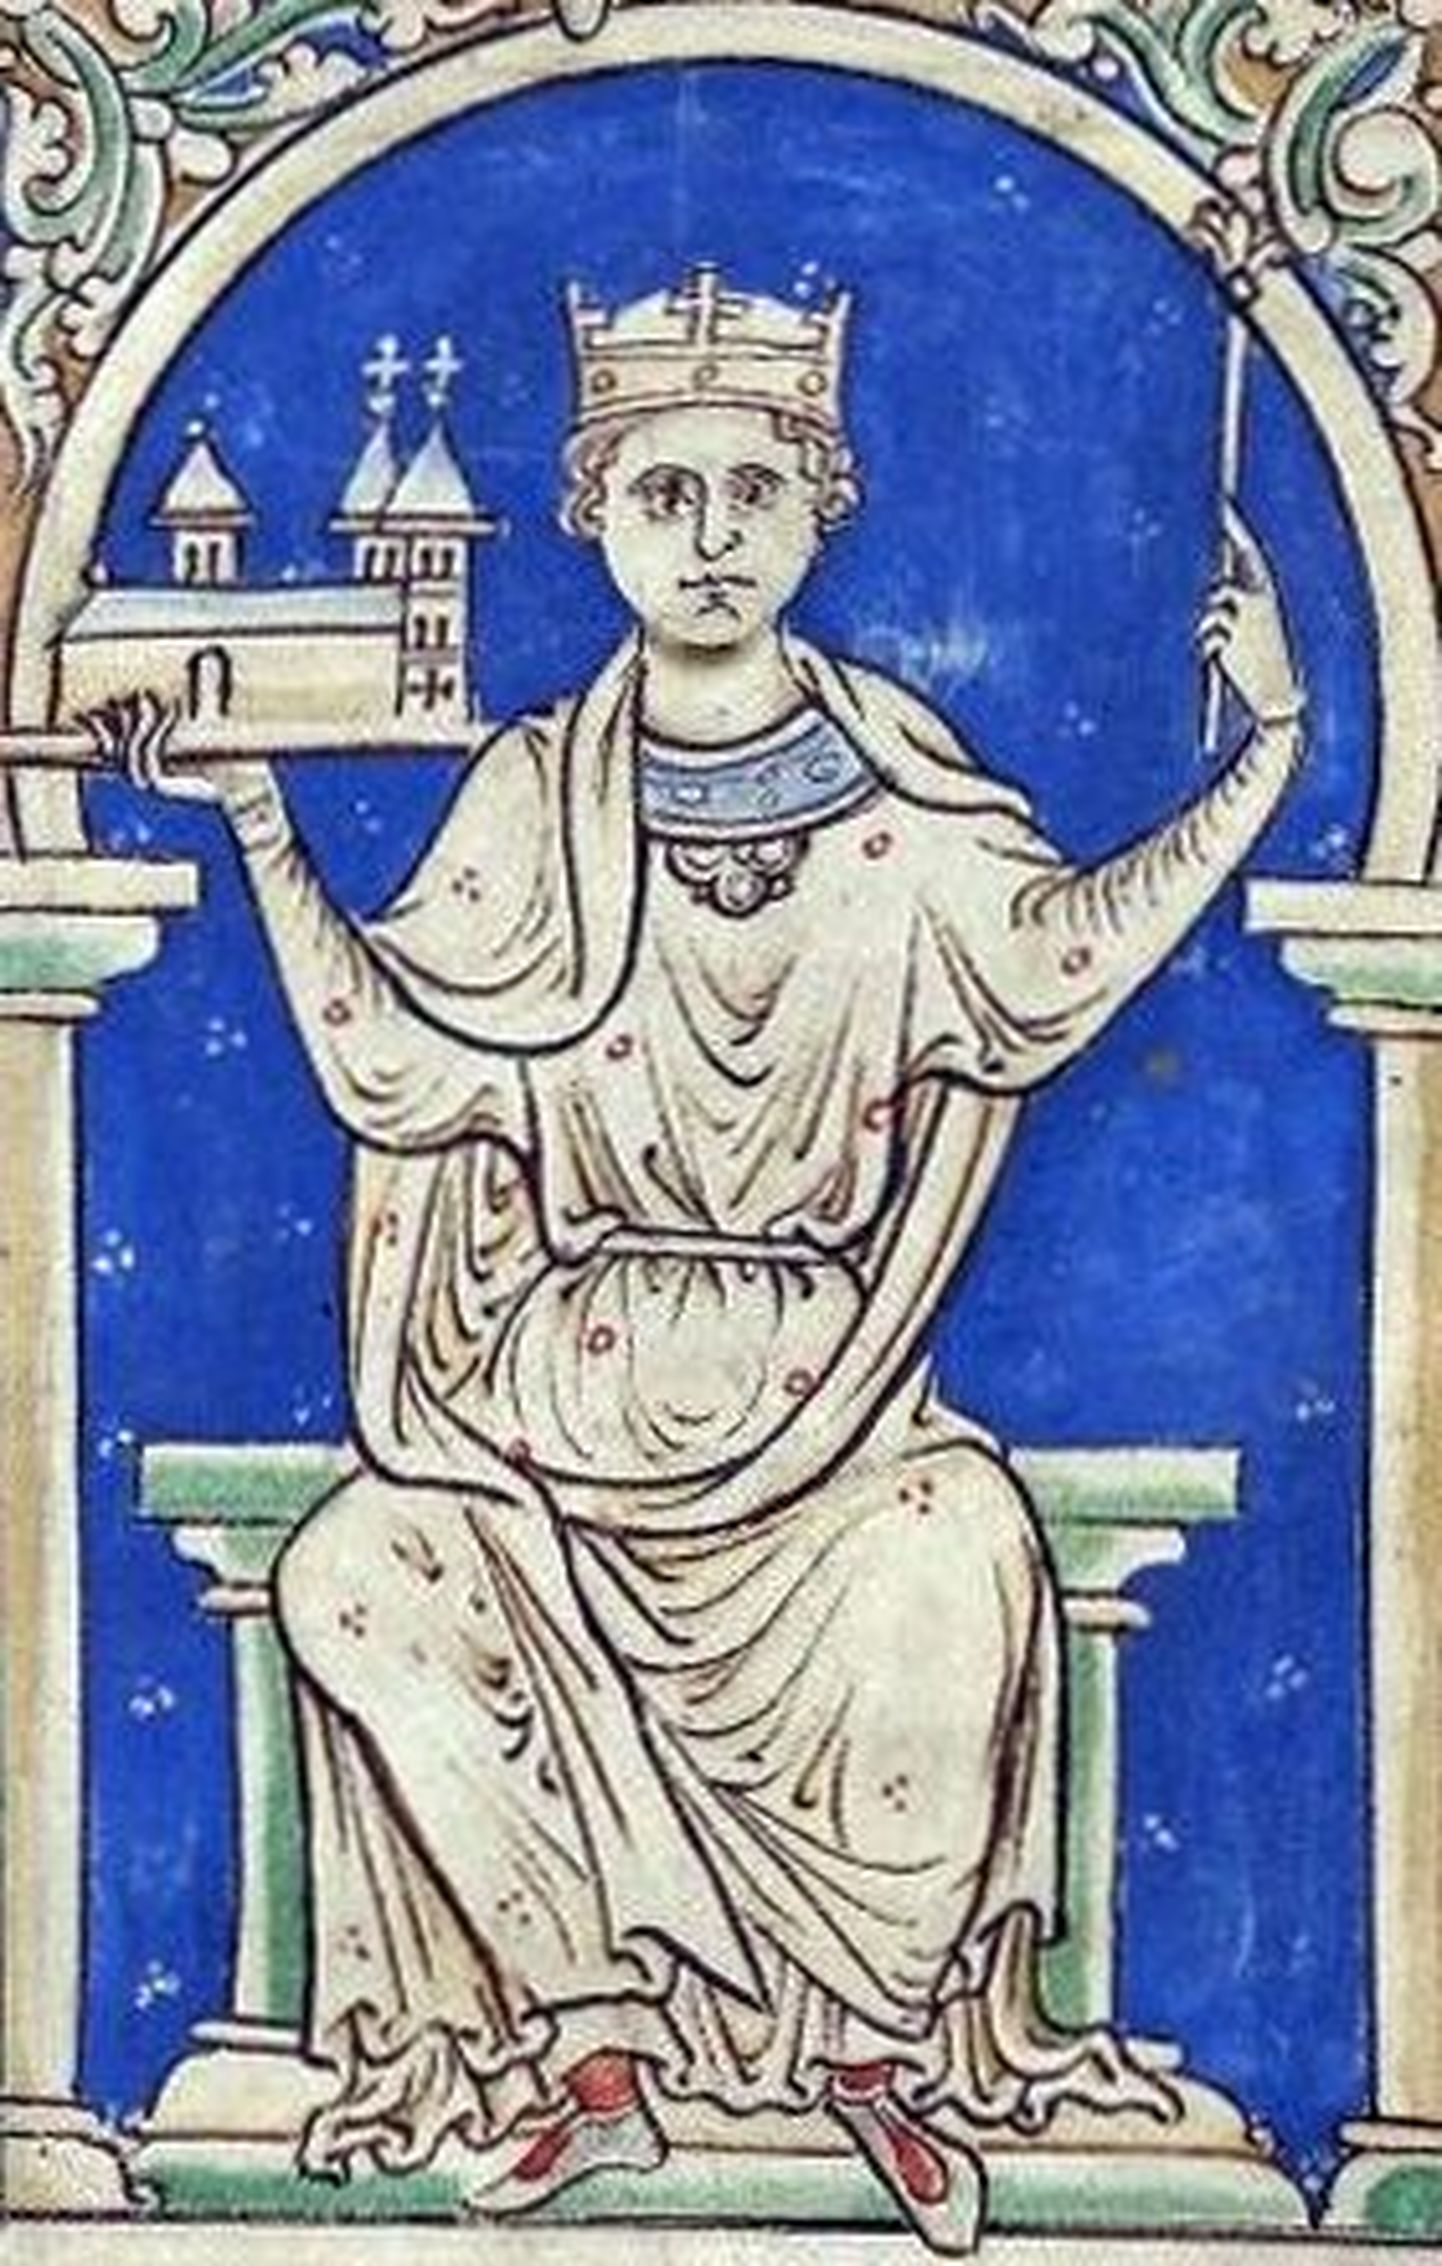 Inglise kuningat Stephanit kujutav keskaegne joonistus